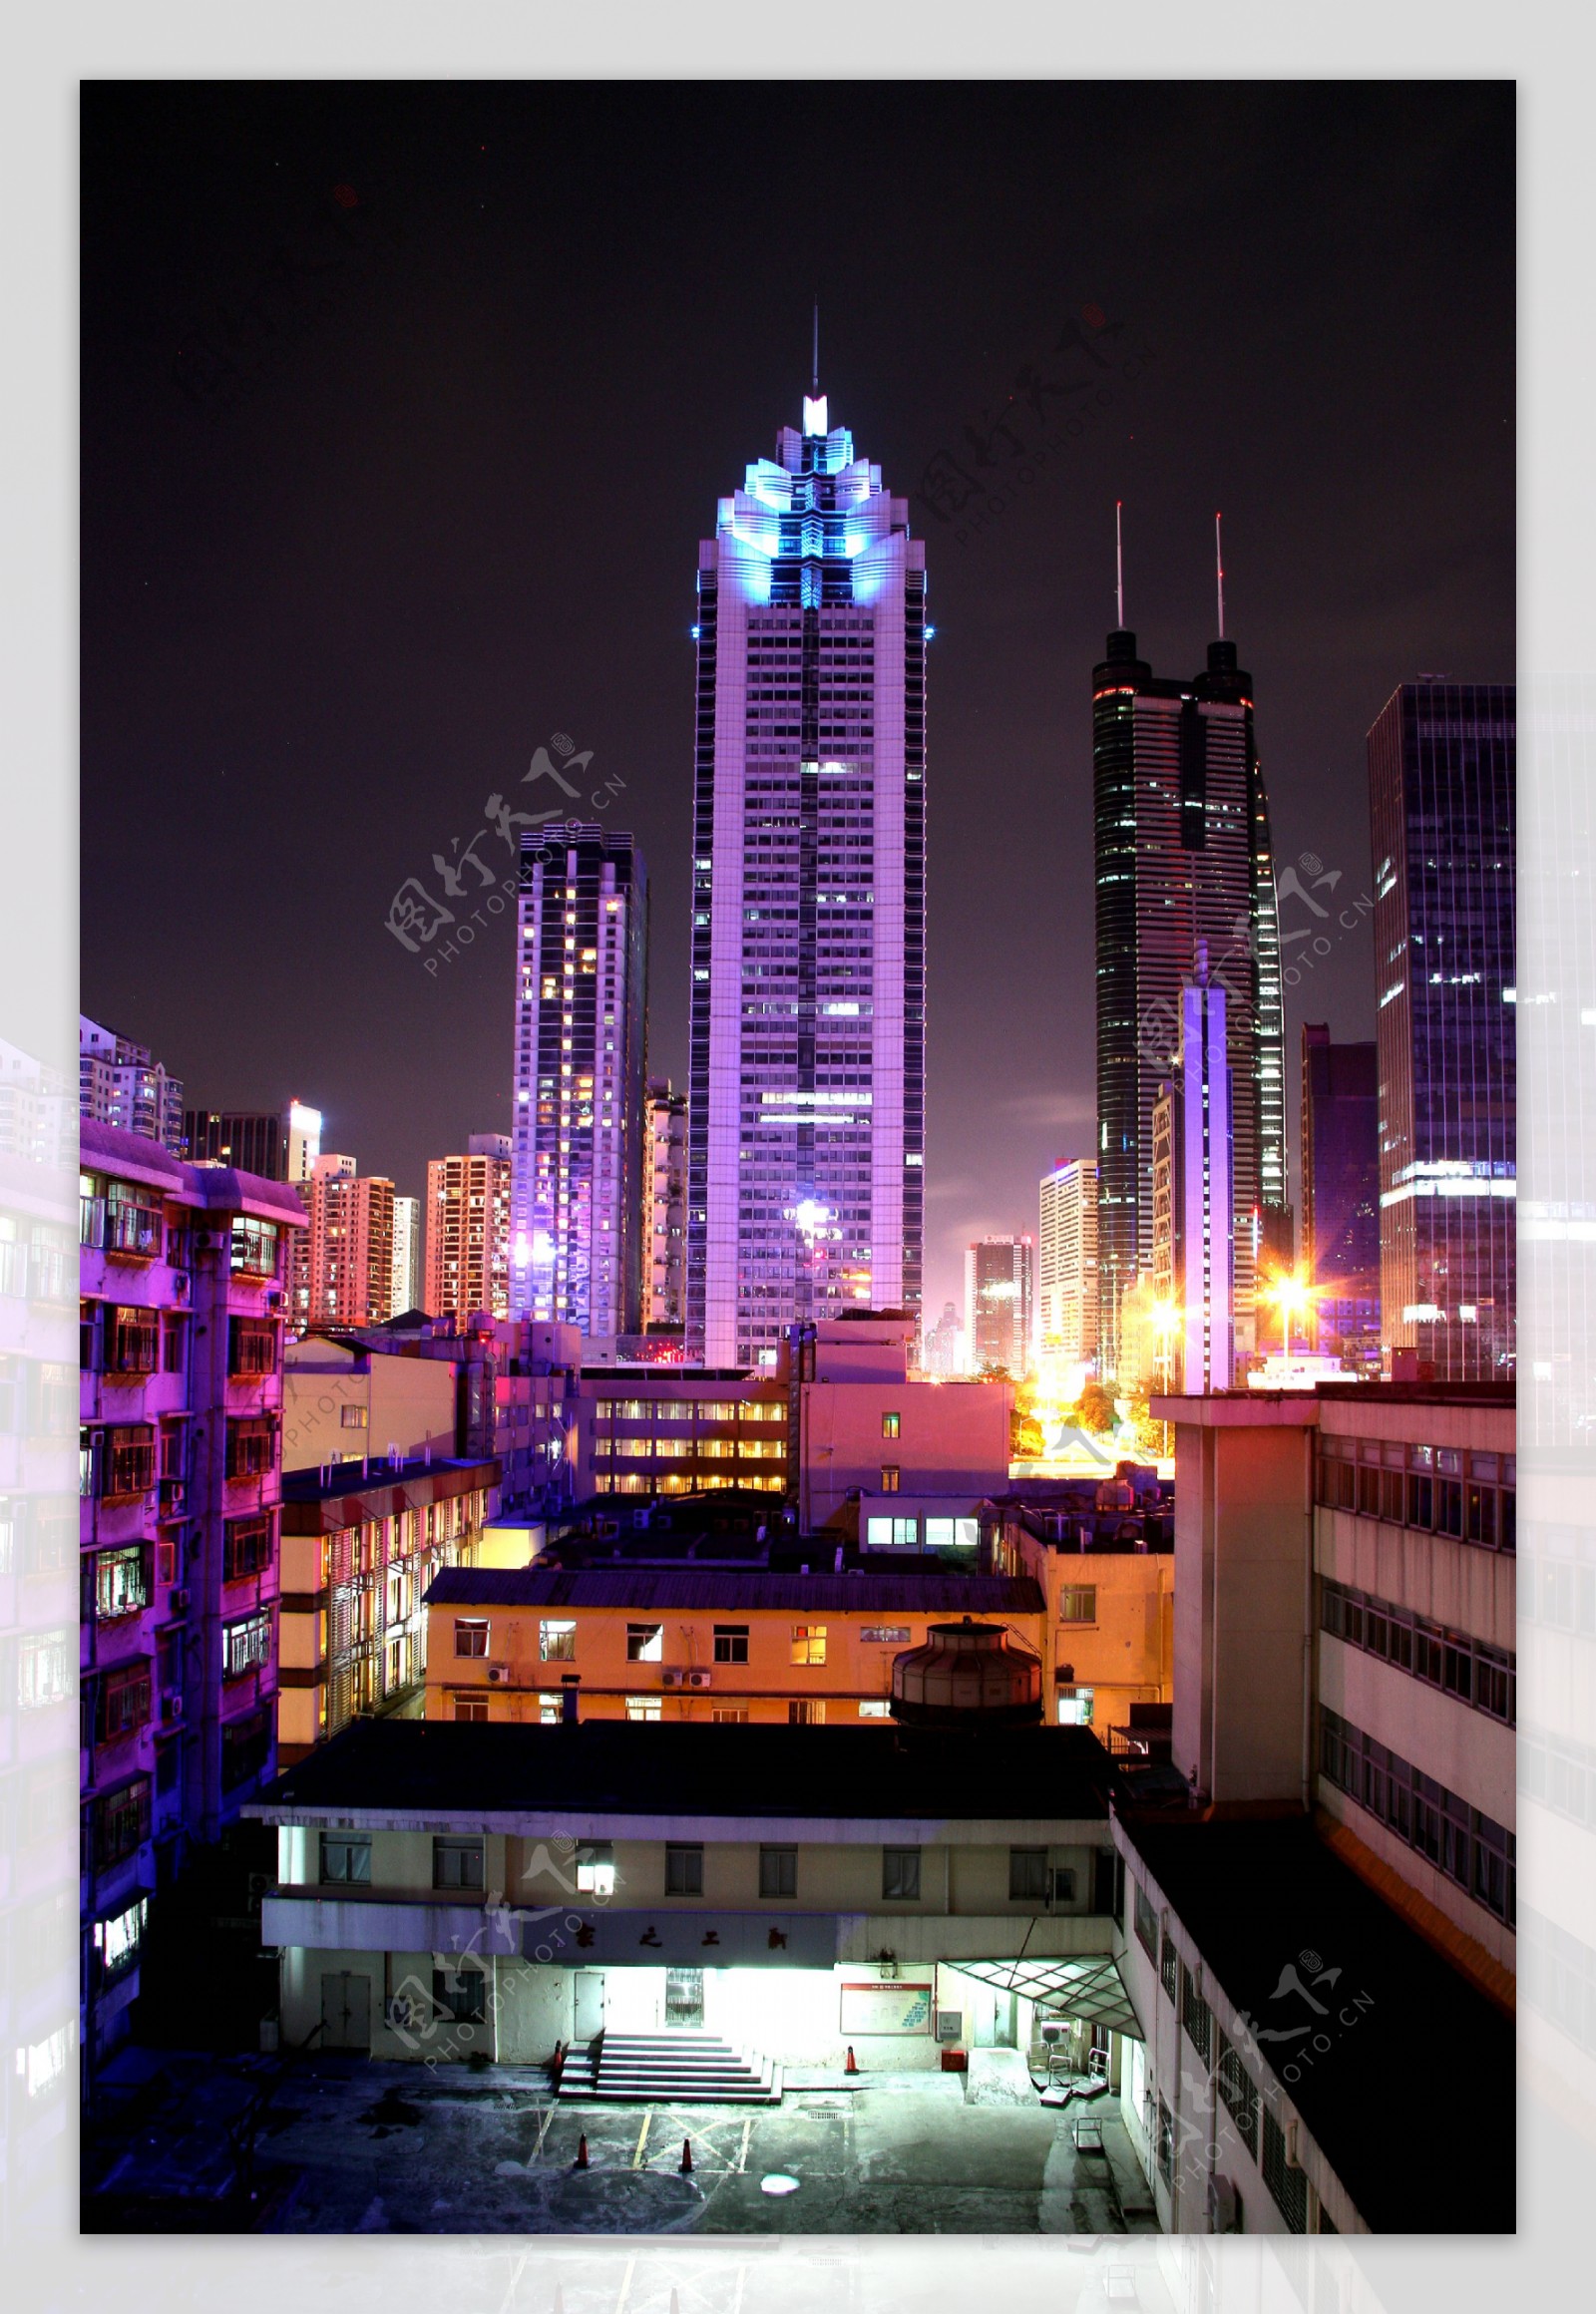 深圳地王大厦夜景图片